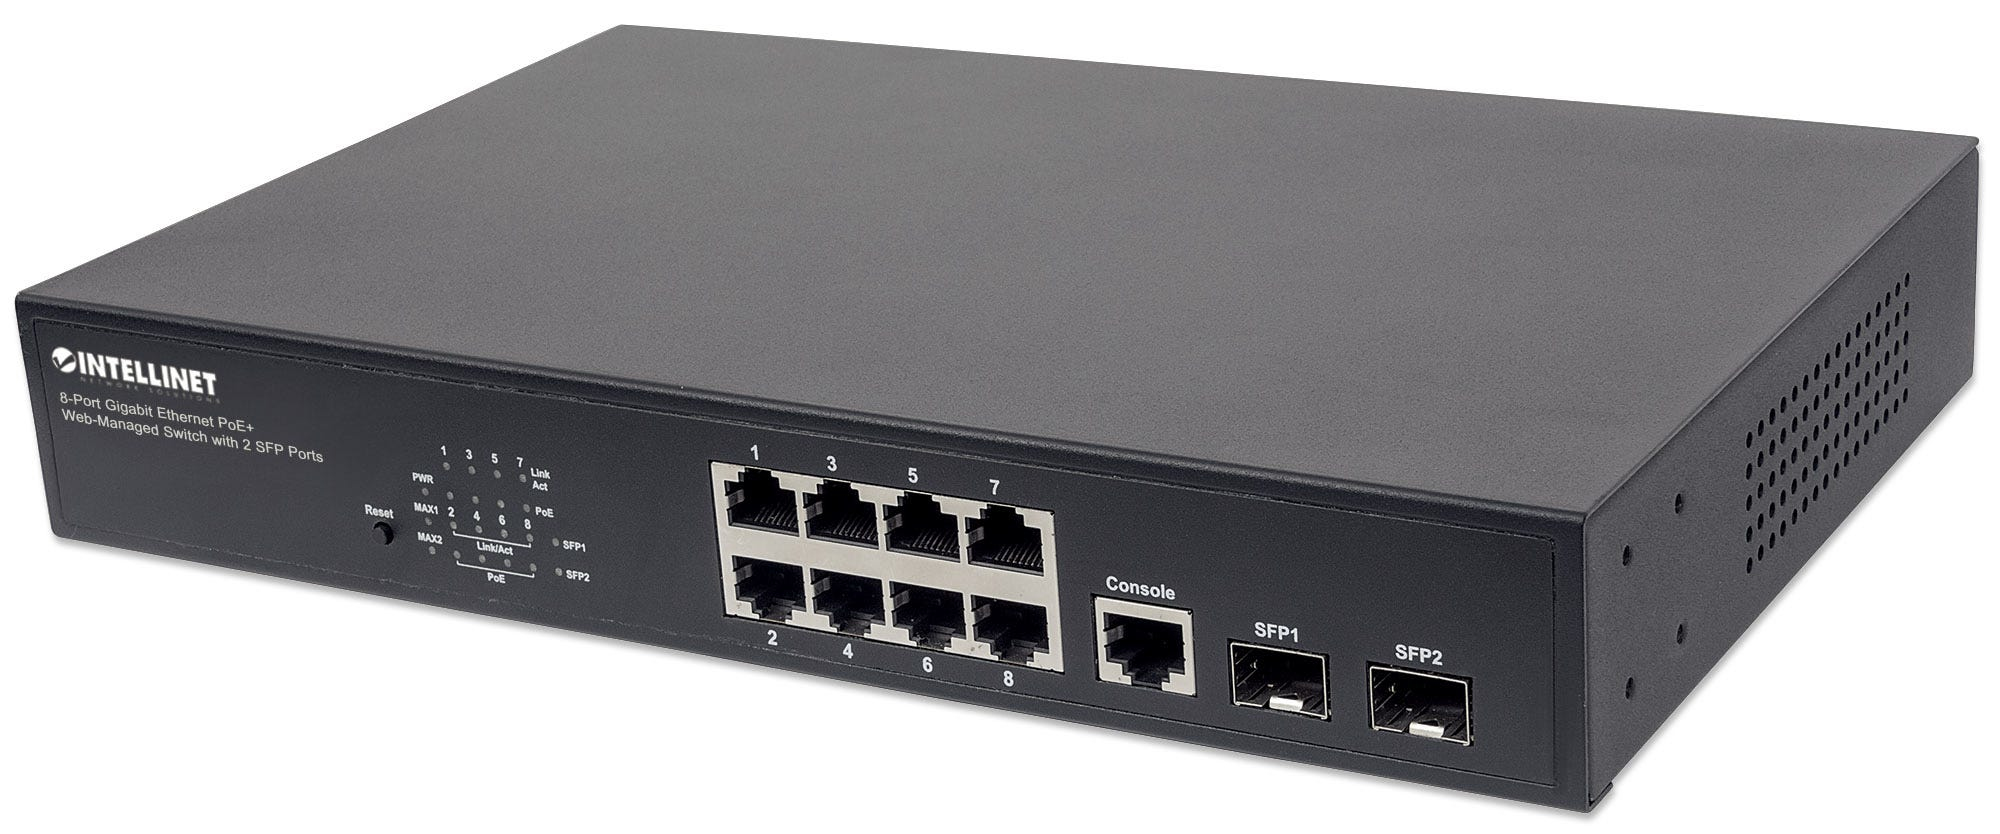 Intellinet 8-Port Gigabit Ethernet PoE+ Web-Managed Switch mit 2 SFP-Ports, 8 x PoE-Ports, IEEE 802.3at/af Power over Ethernet (PoE+/PoE), 140 W, Endspan, Desktop, PDM-Funktion, 19" Rackmount